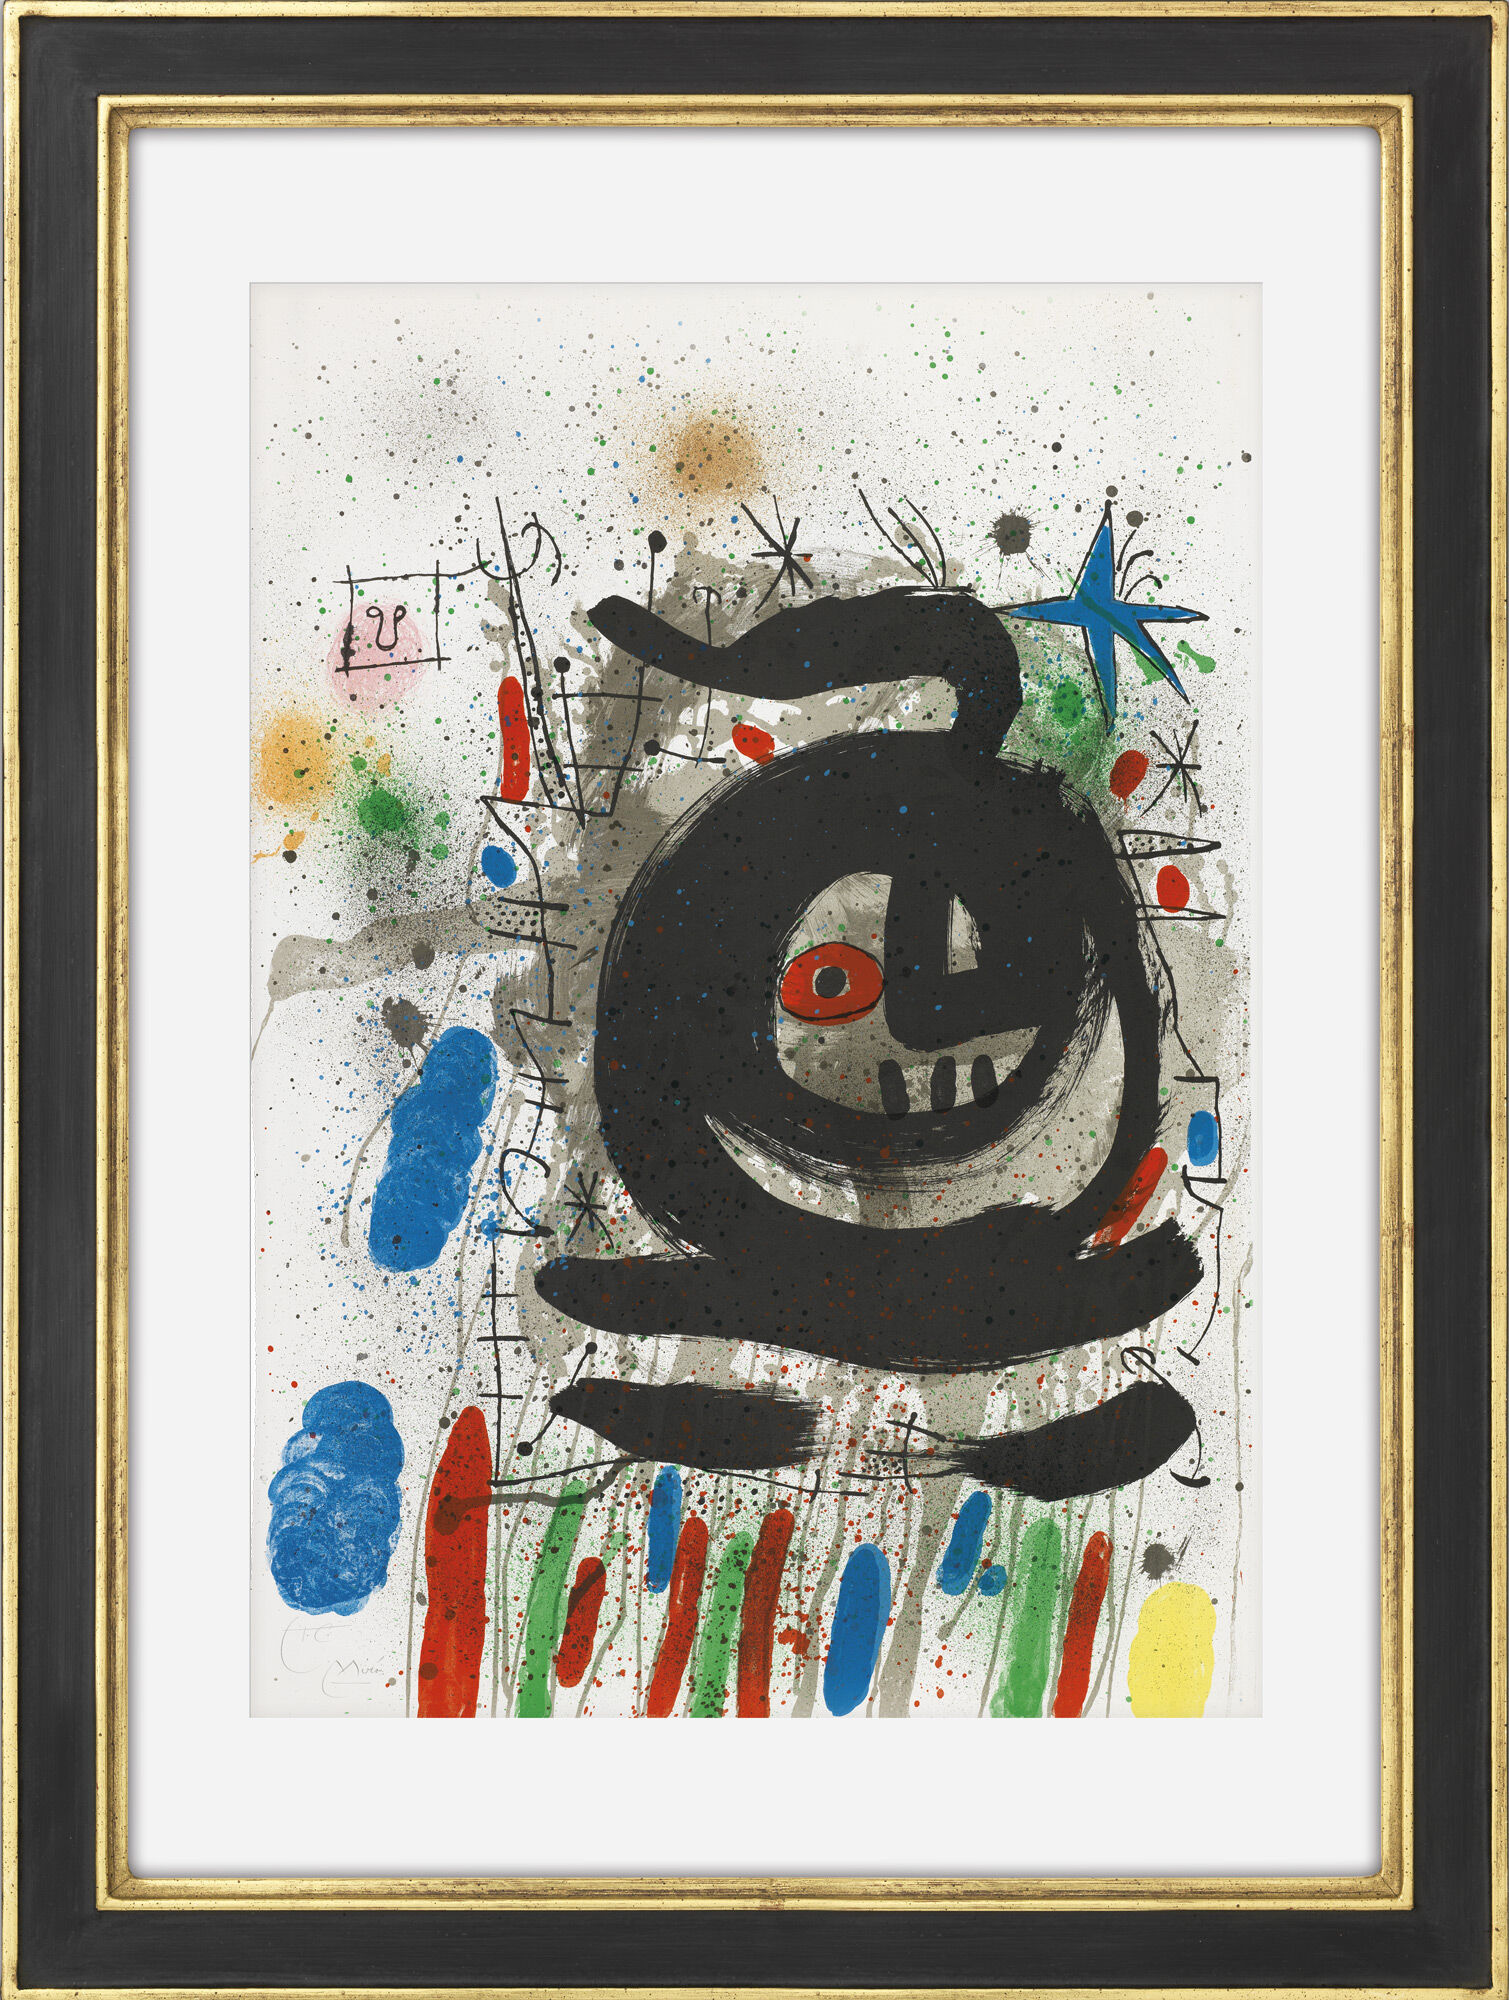 Tableau "Composition pour Club 49, Barcelone" (1968) von Joan Miró